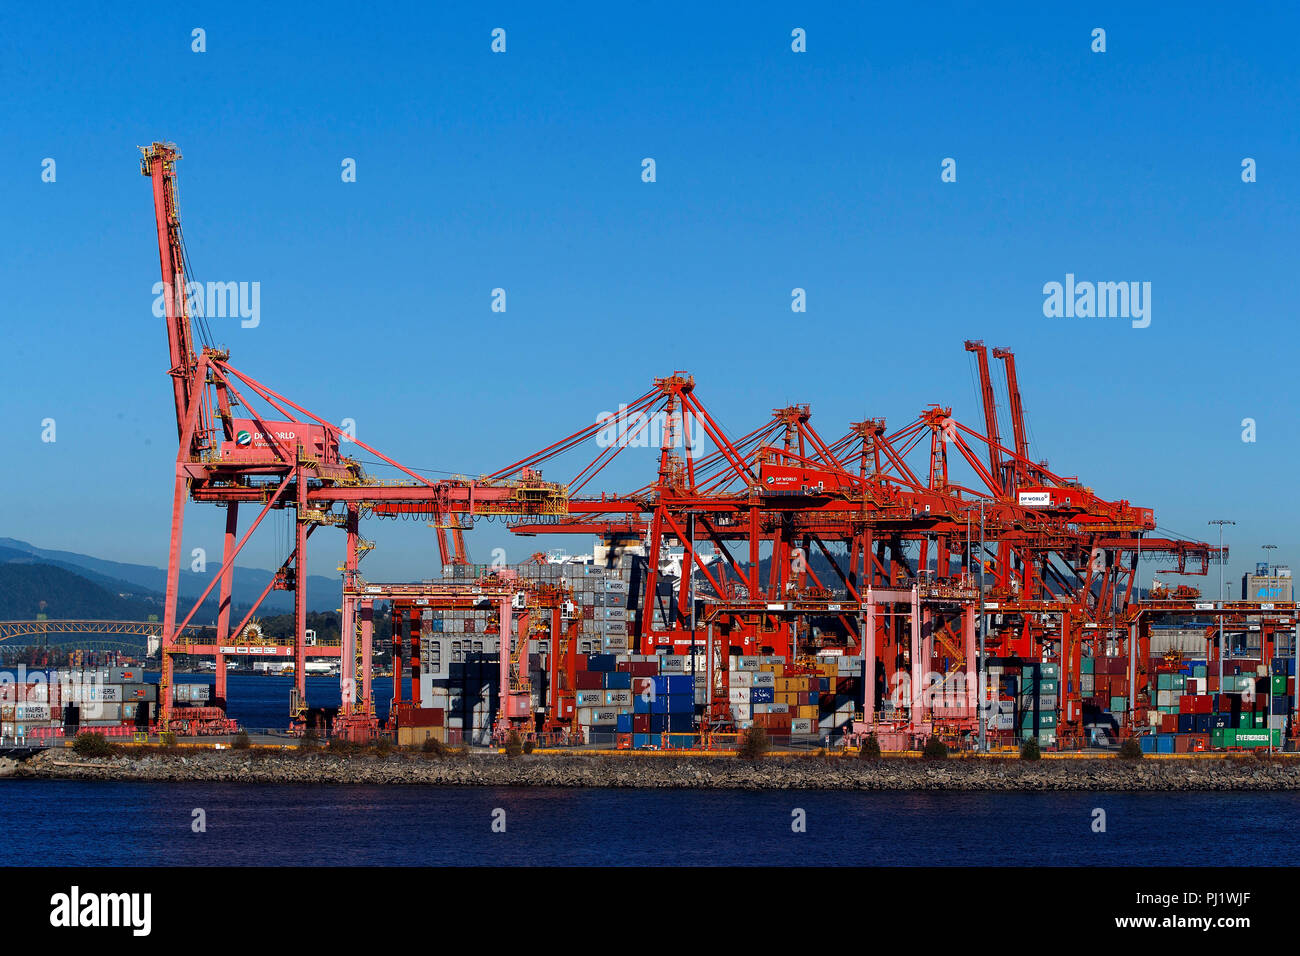 Grúas de contenedores y maquinaria, el puerto de Vancouver, el puerto de Vancouver, Vancouver, British Columbia, Canadá Foto de stock